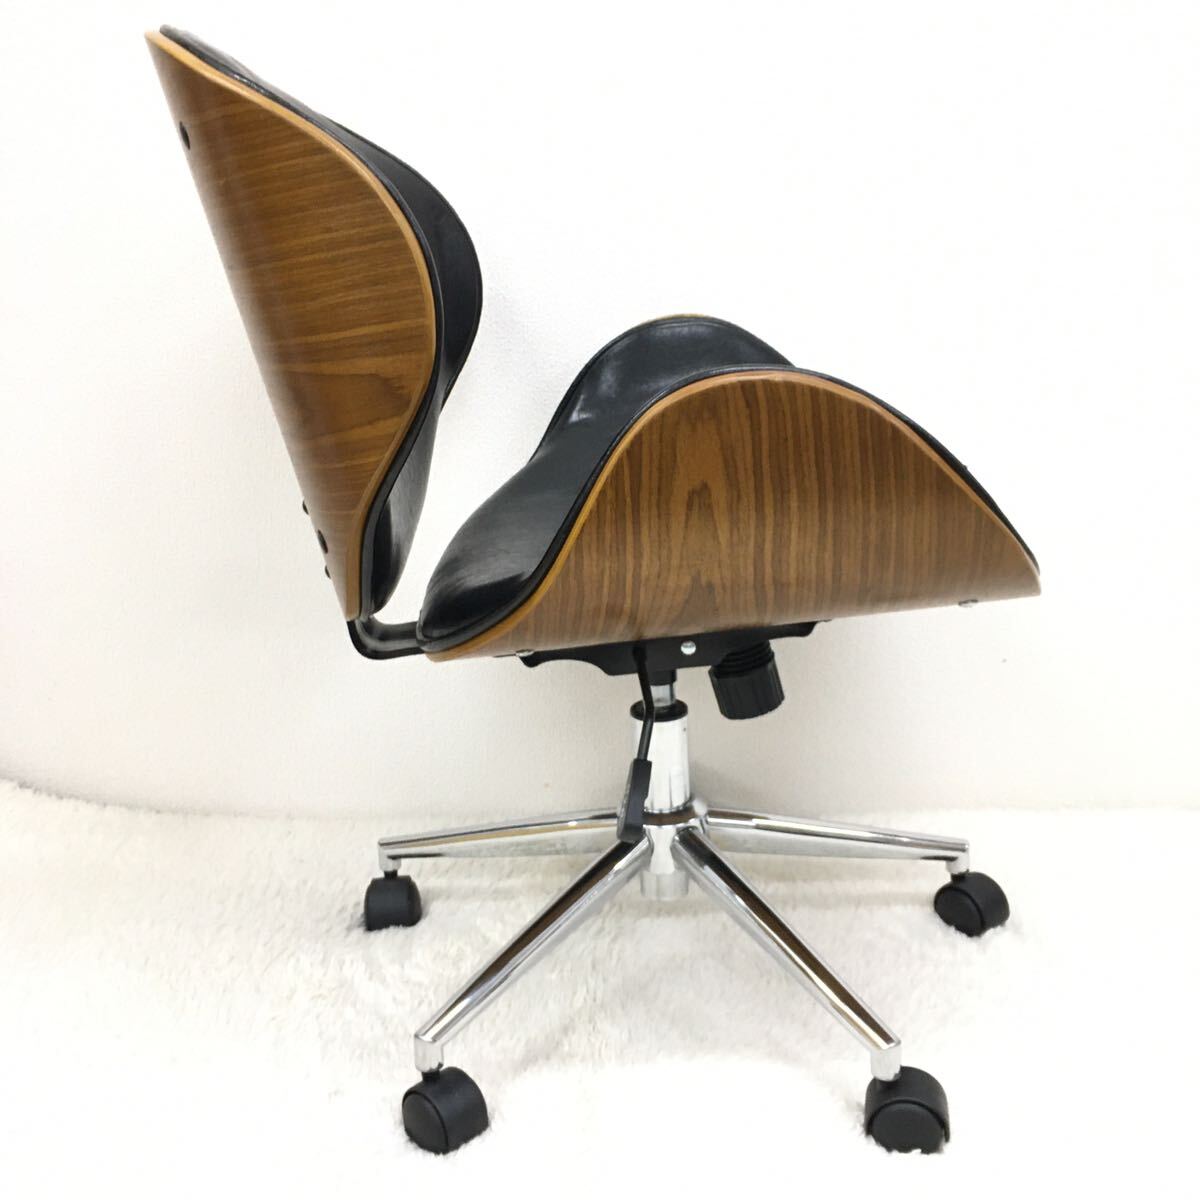 KNOX ノースチェア レトロ オフィスチェア 革張り 合成皮革 モダン木目曲線 書斎椅子 人間工学 ガス厚式昇降機能 ブラック